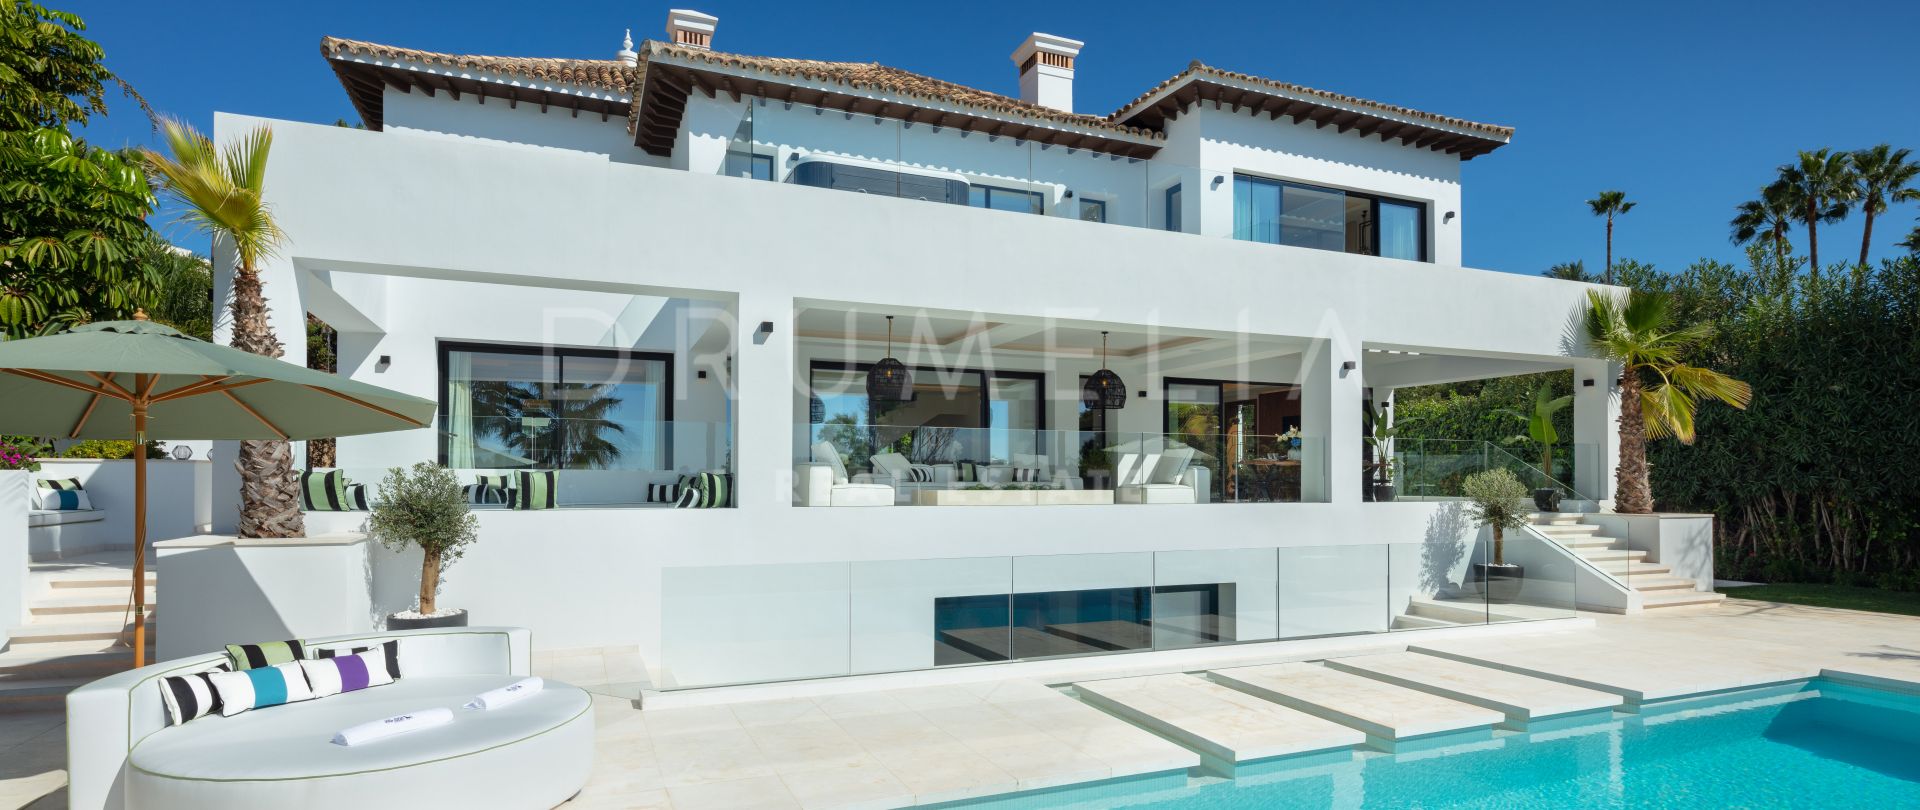 Villa 1000 - Moderne luxe villa aan de golfbaan met werelds gevoel, Nueva Andalucía